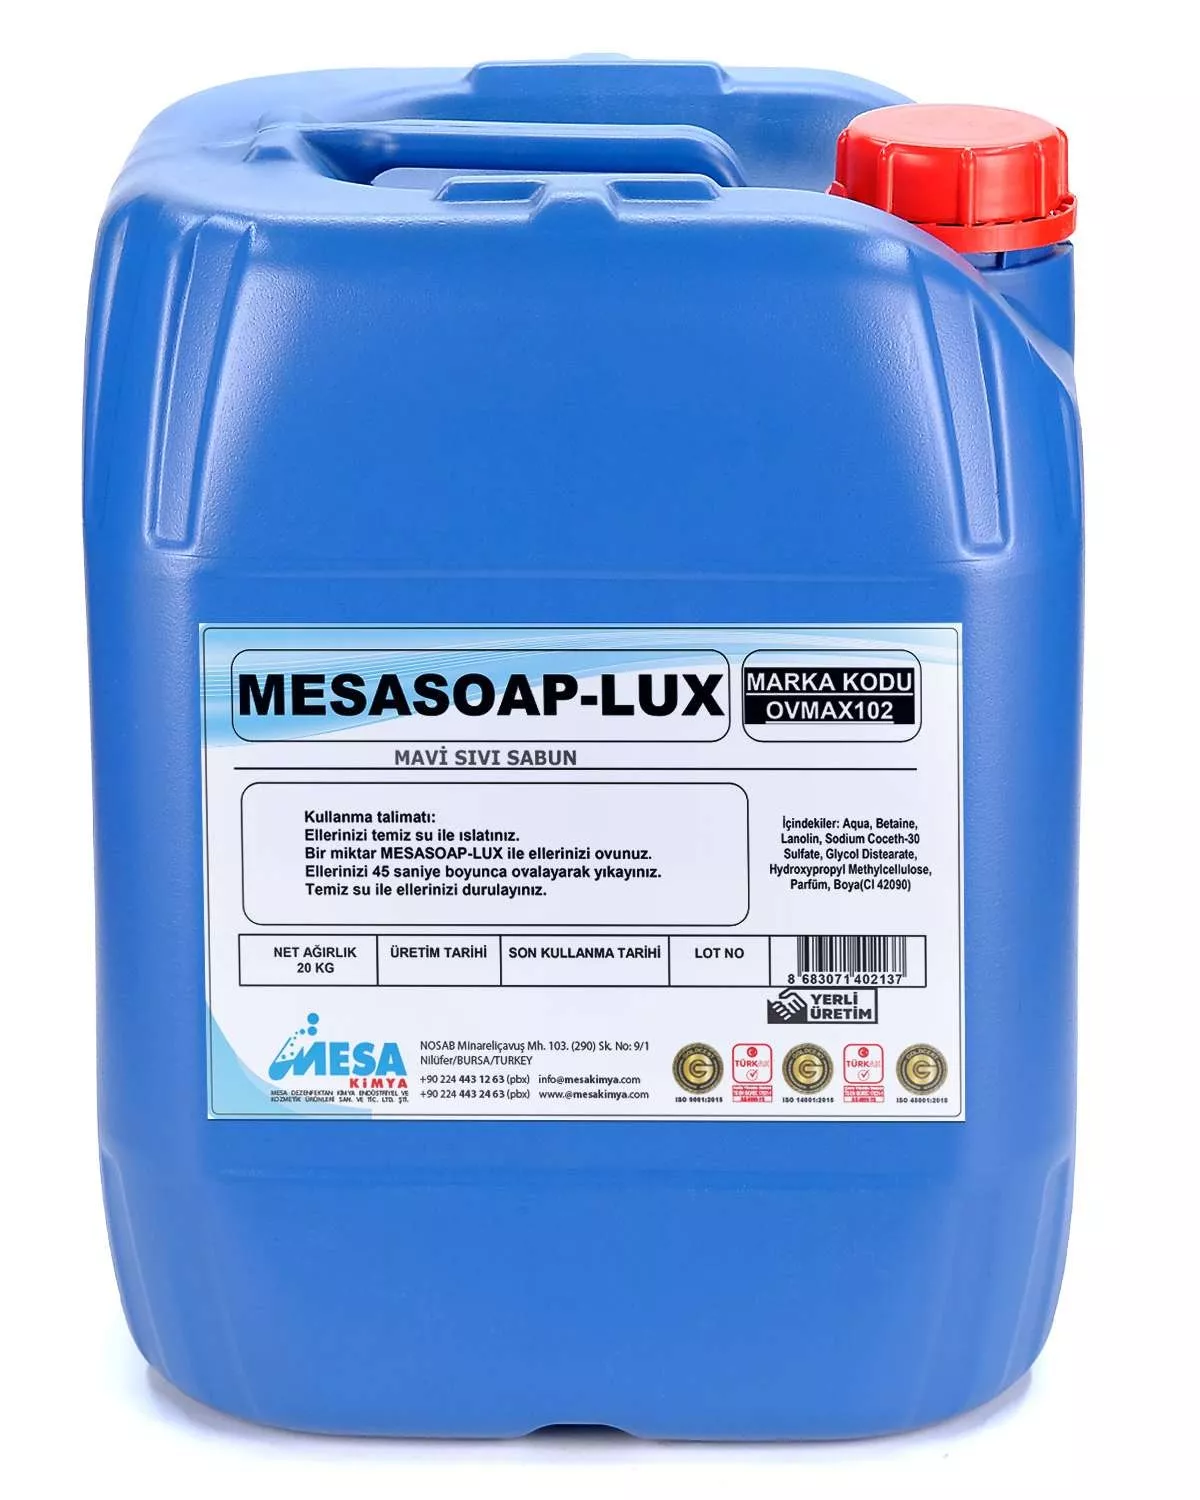 Mesasoap-lux mavi sıvı sabun fiyatları